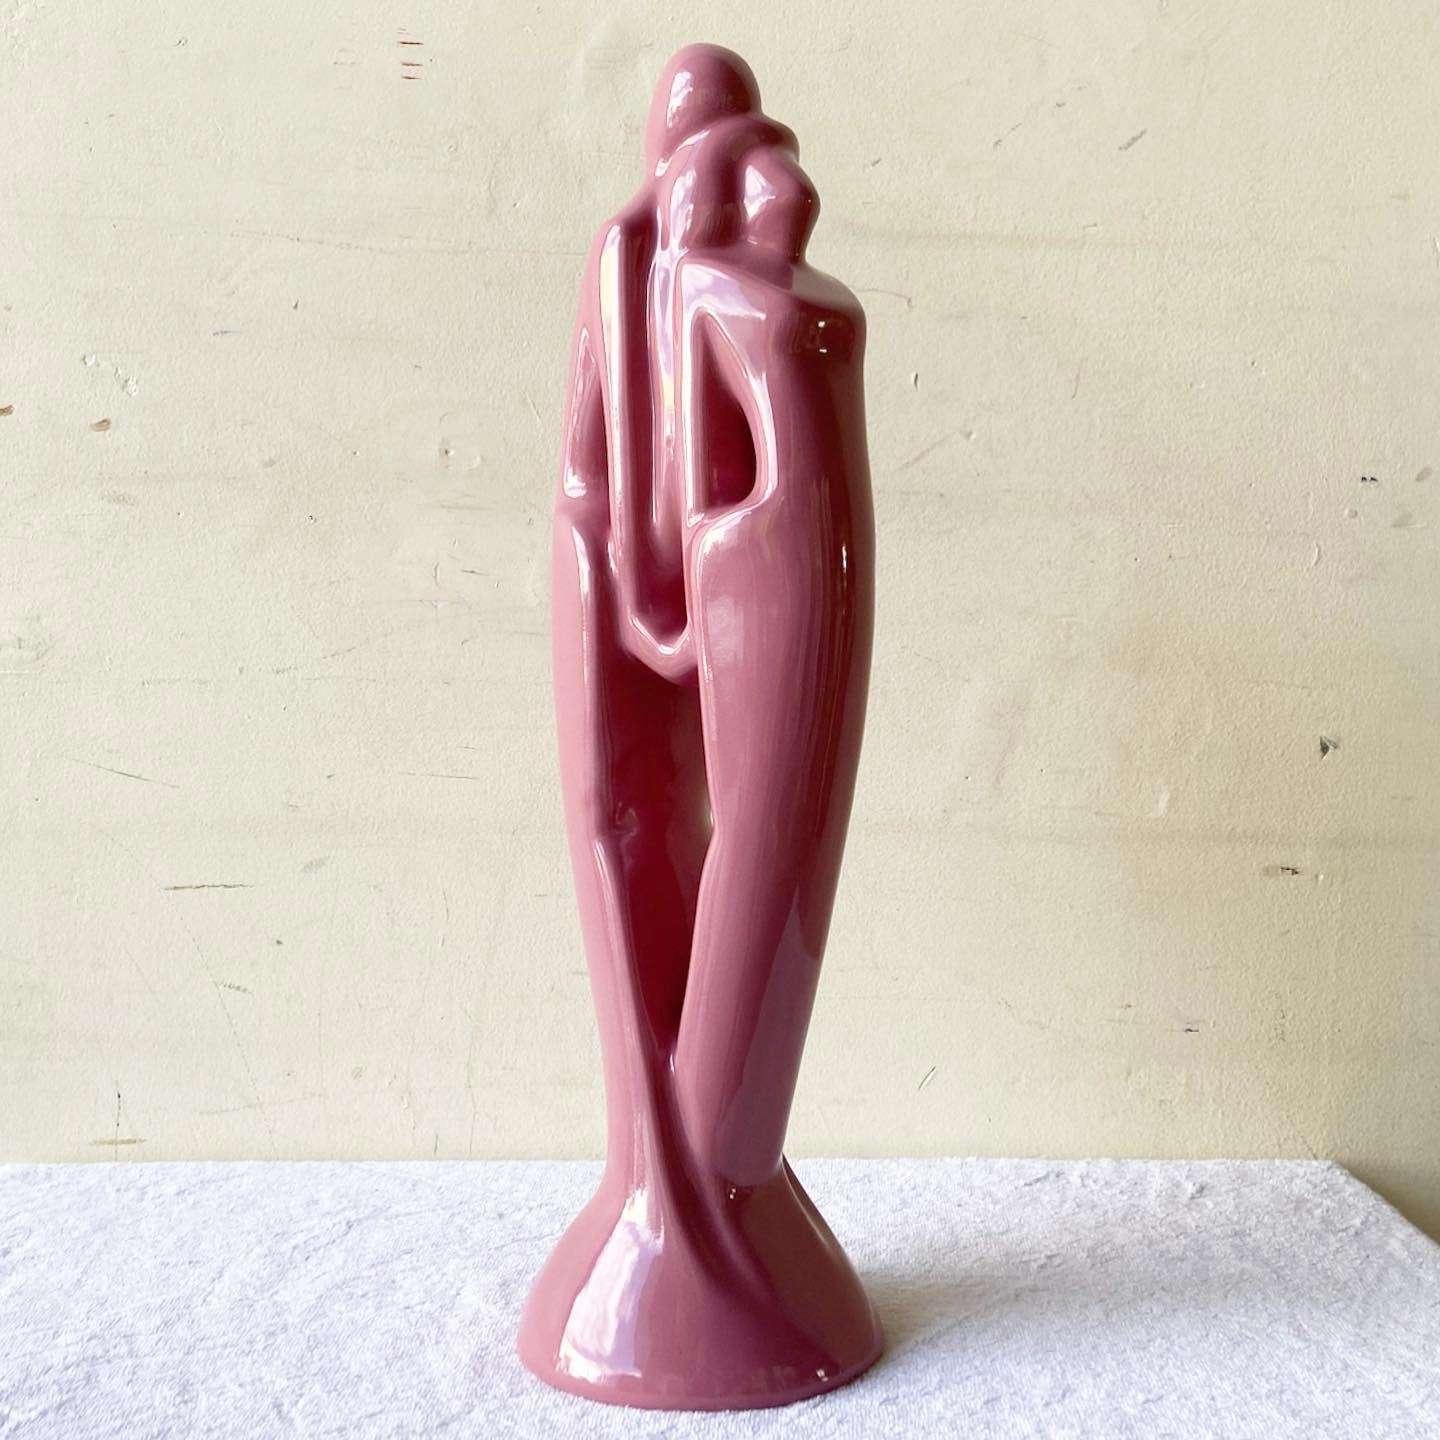 Incroyable sculpture postmoderne vintage en céramique rose dans le style de Haeger.
